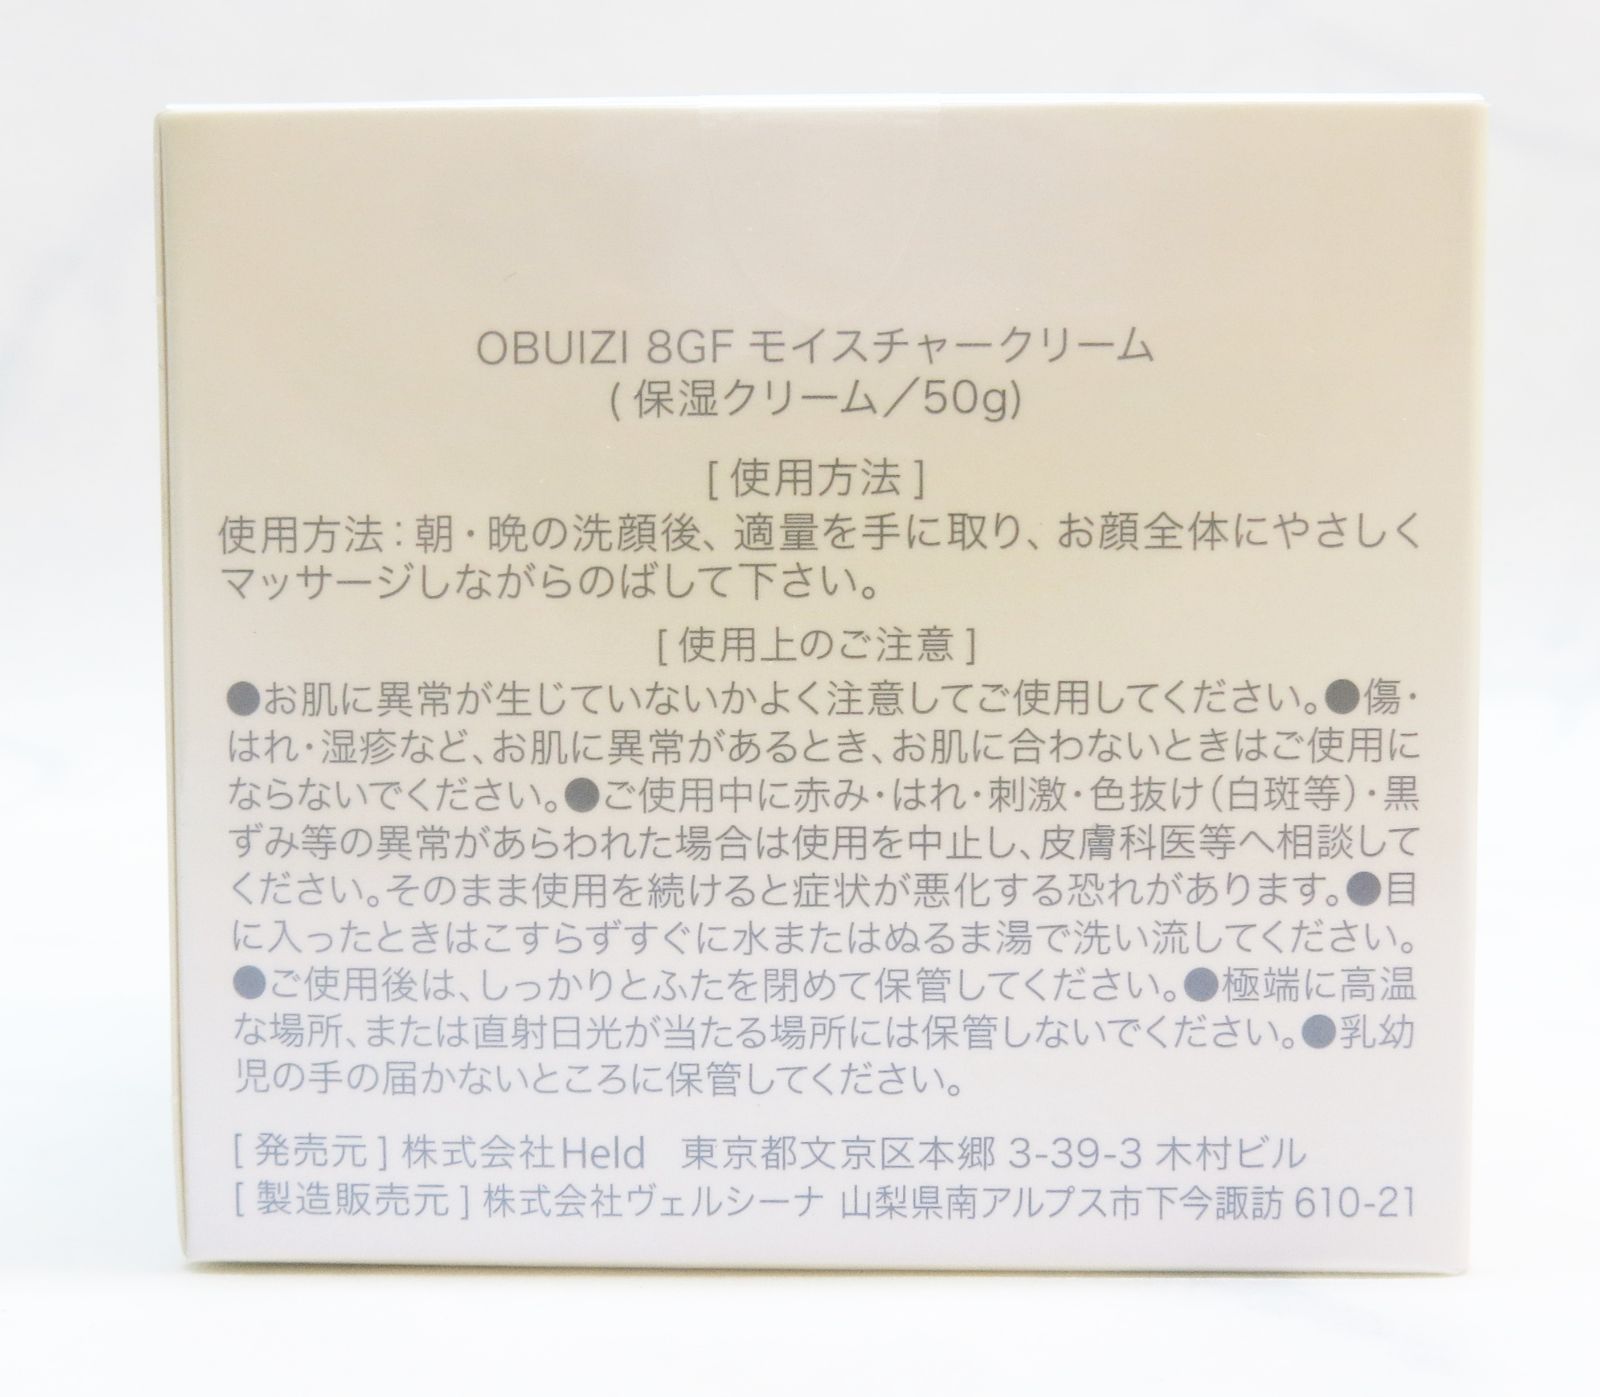 未使用 OBUIZI モイスチャークリーム 8GF 保湿クリーム 50g